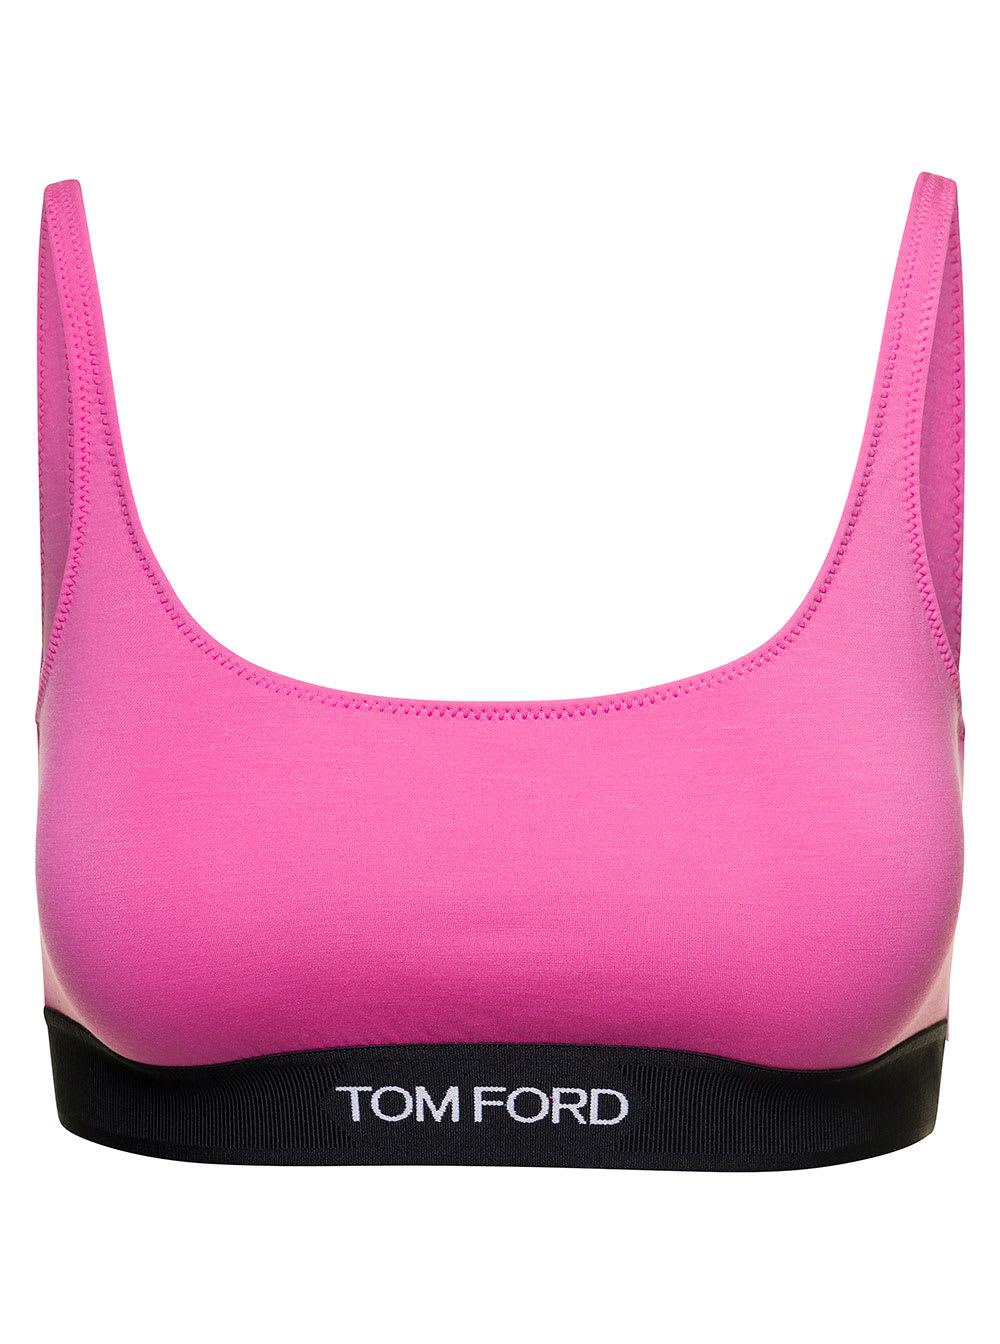 Tom Ford Signature Logo-Tape Bralette